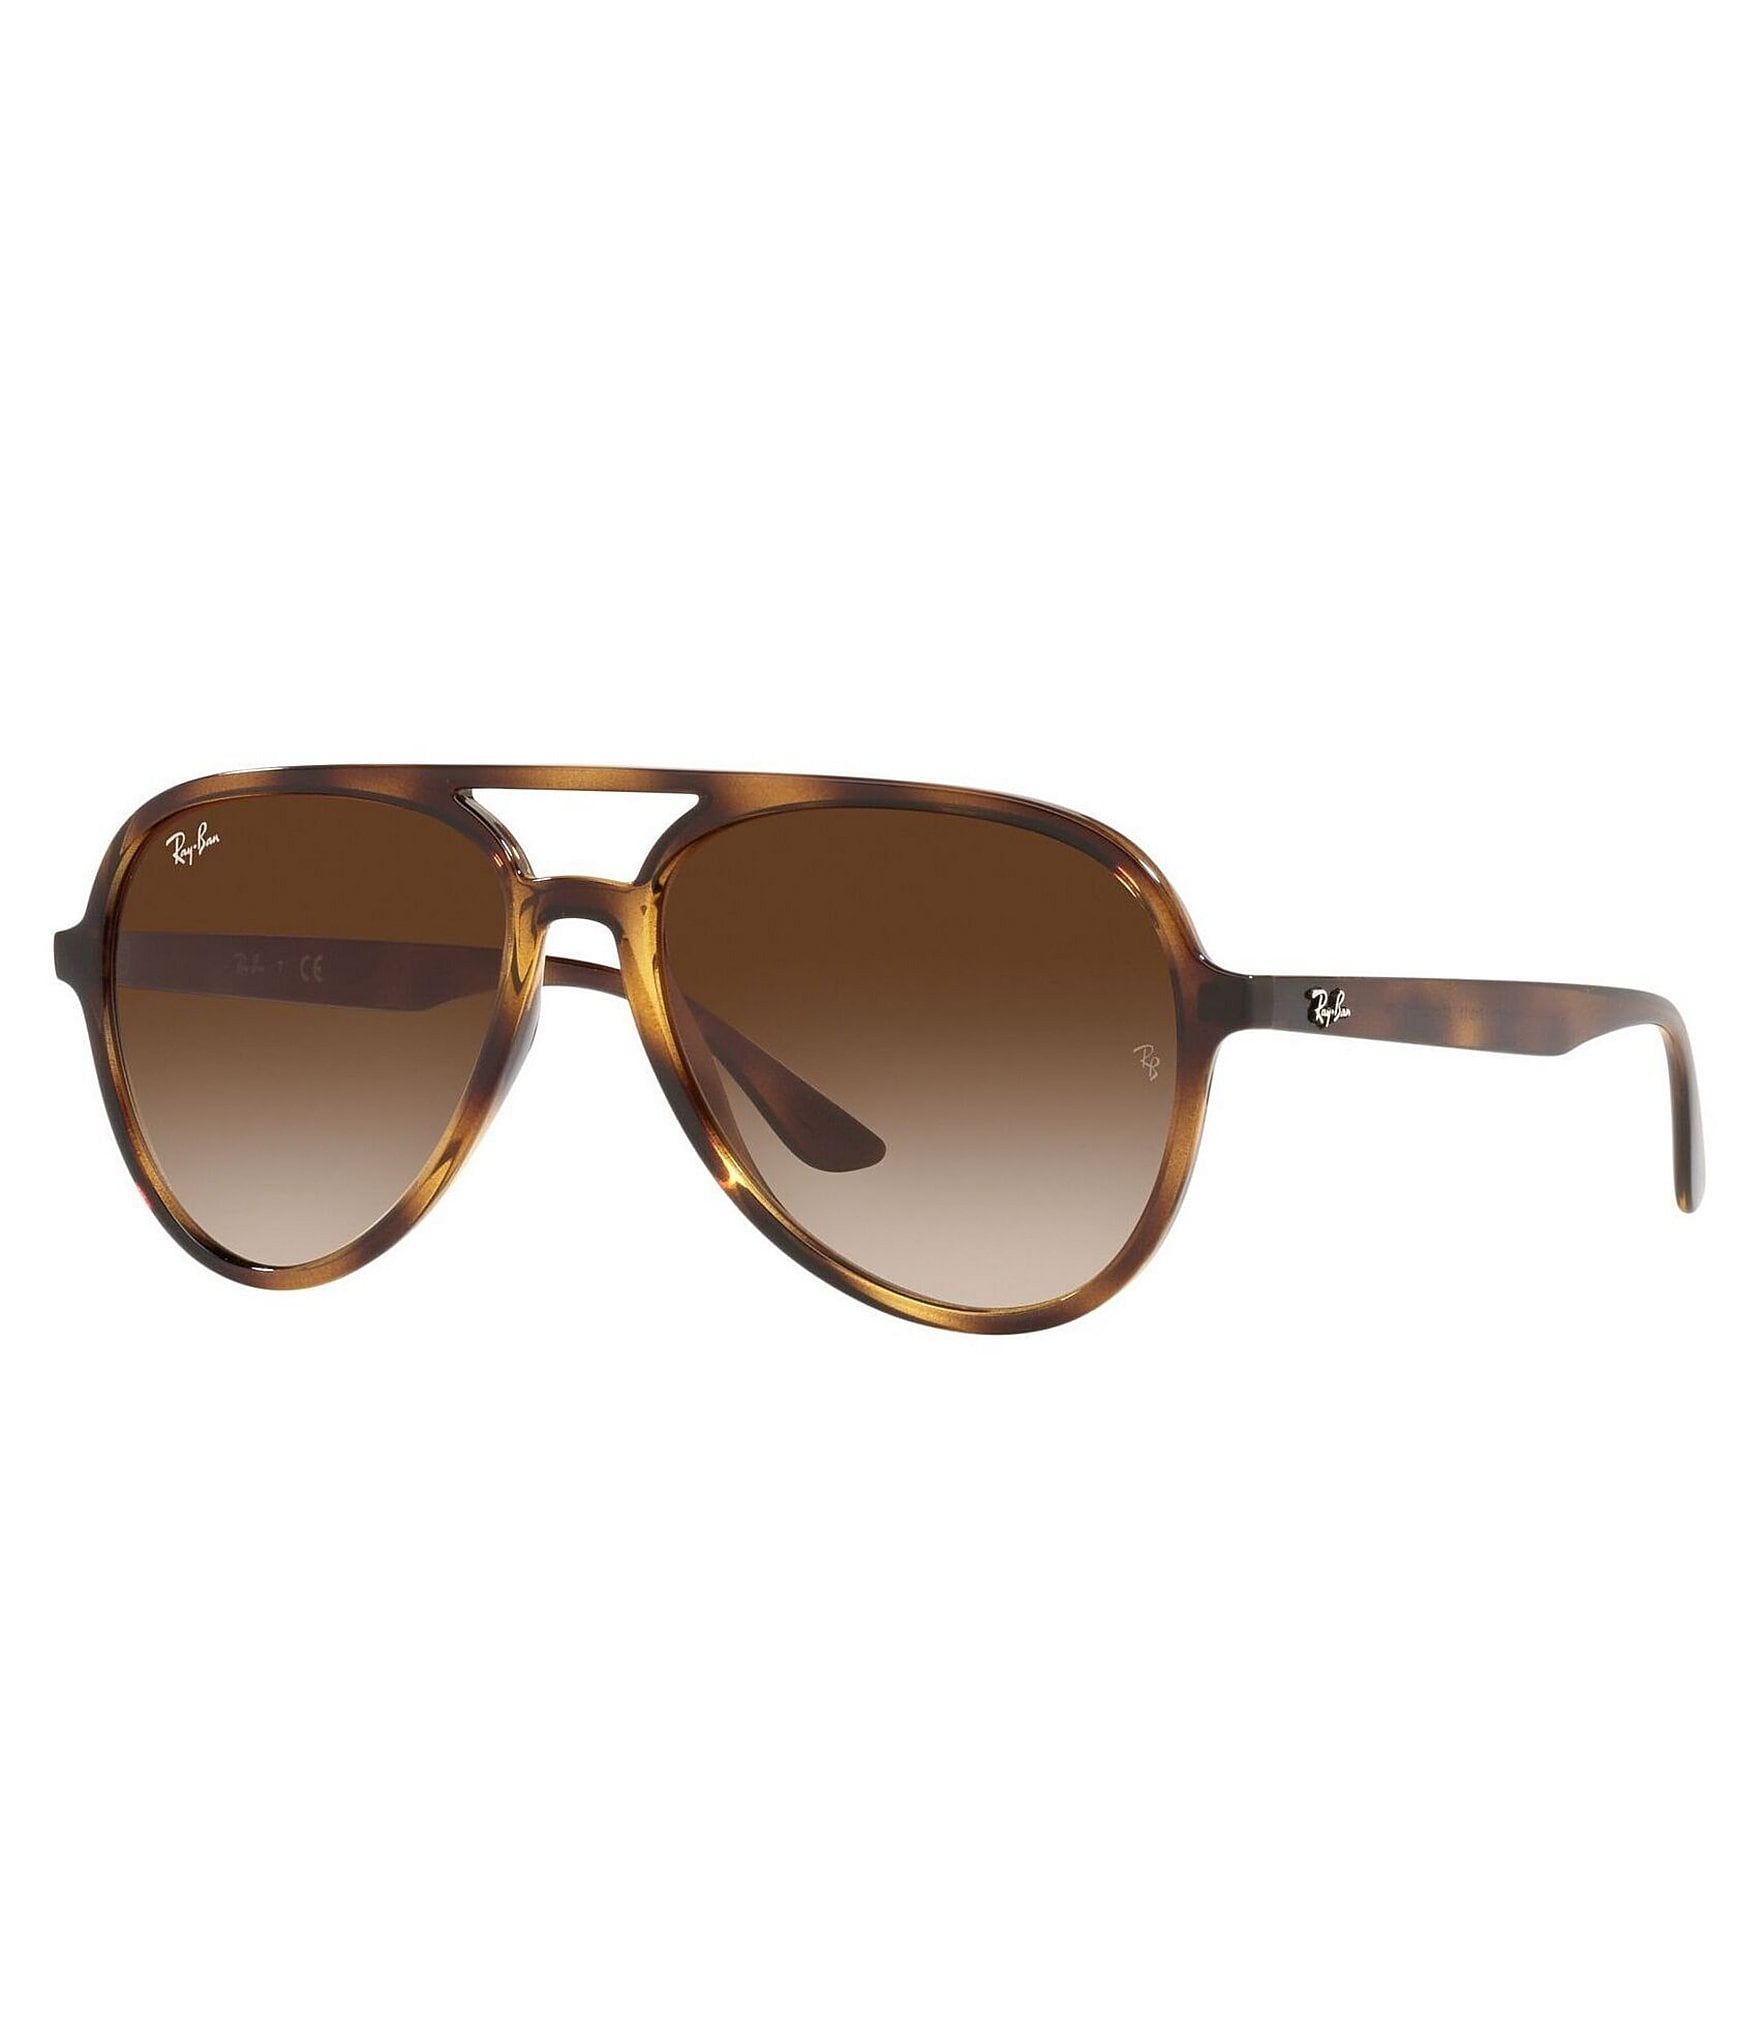 Brown Men Sunglasses at Rs 100 in Banda